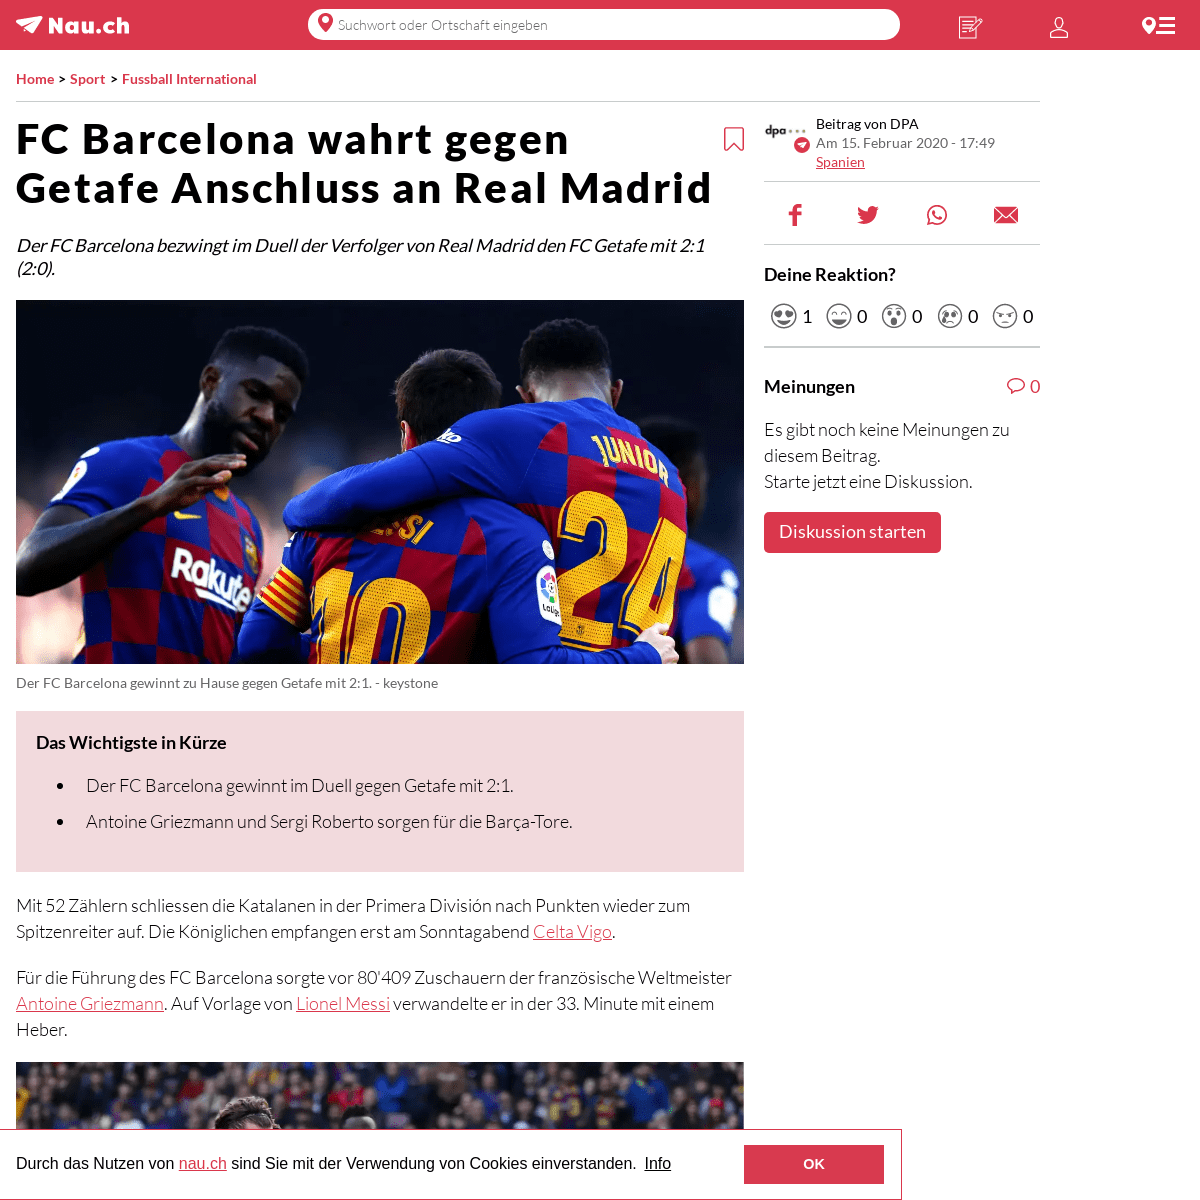 A complete backup of www.nau.ch/sport/fussball-int/fc-barcelona-wahrt-gegen-getafe-anschluss-an-real-madrid-65663095